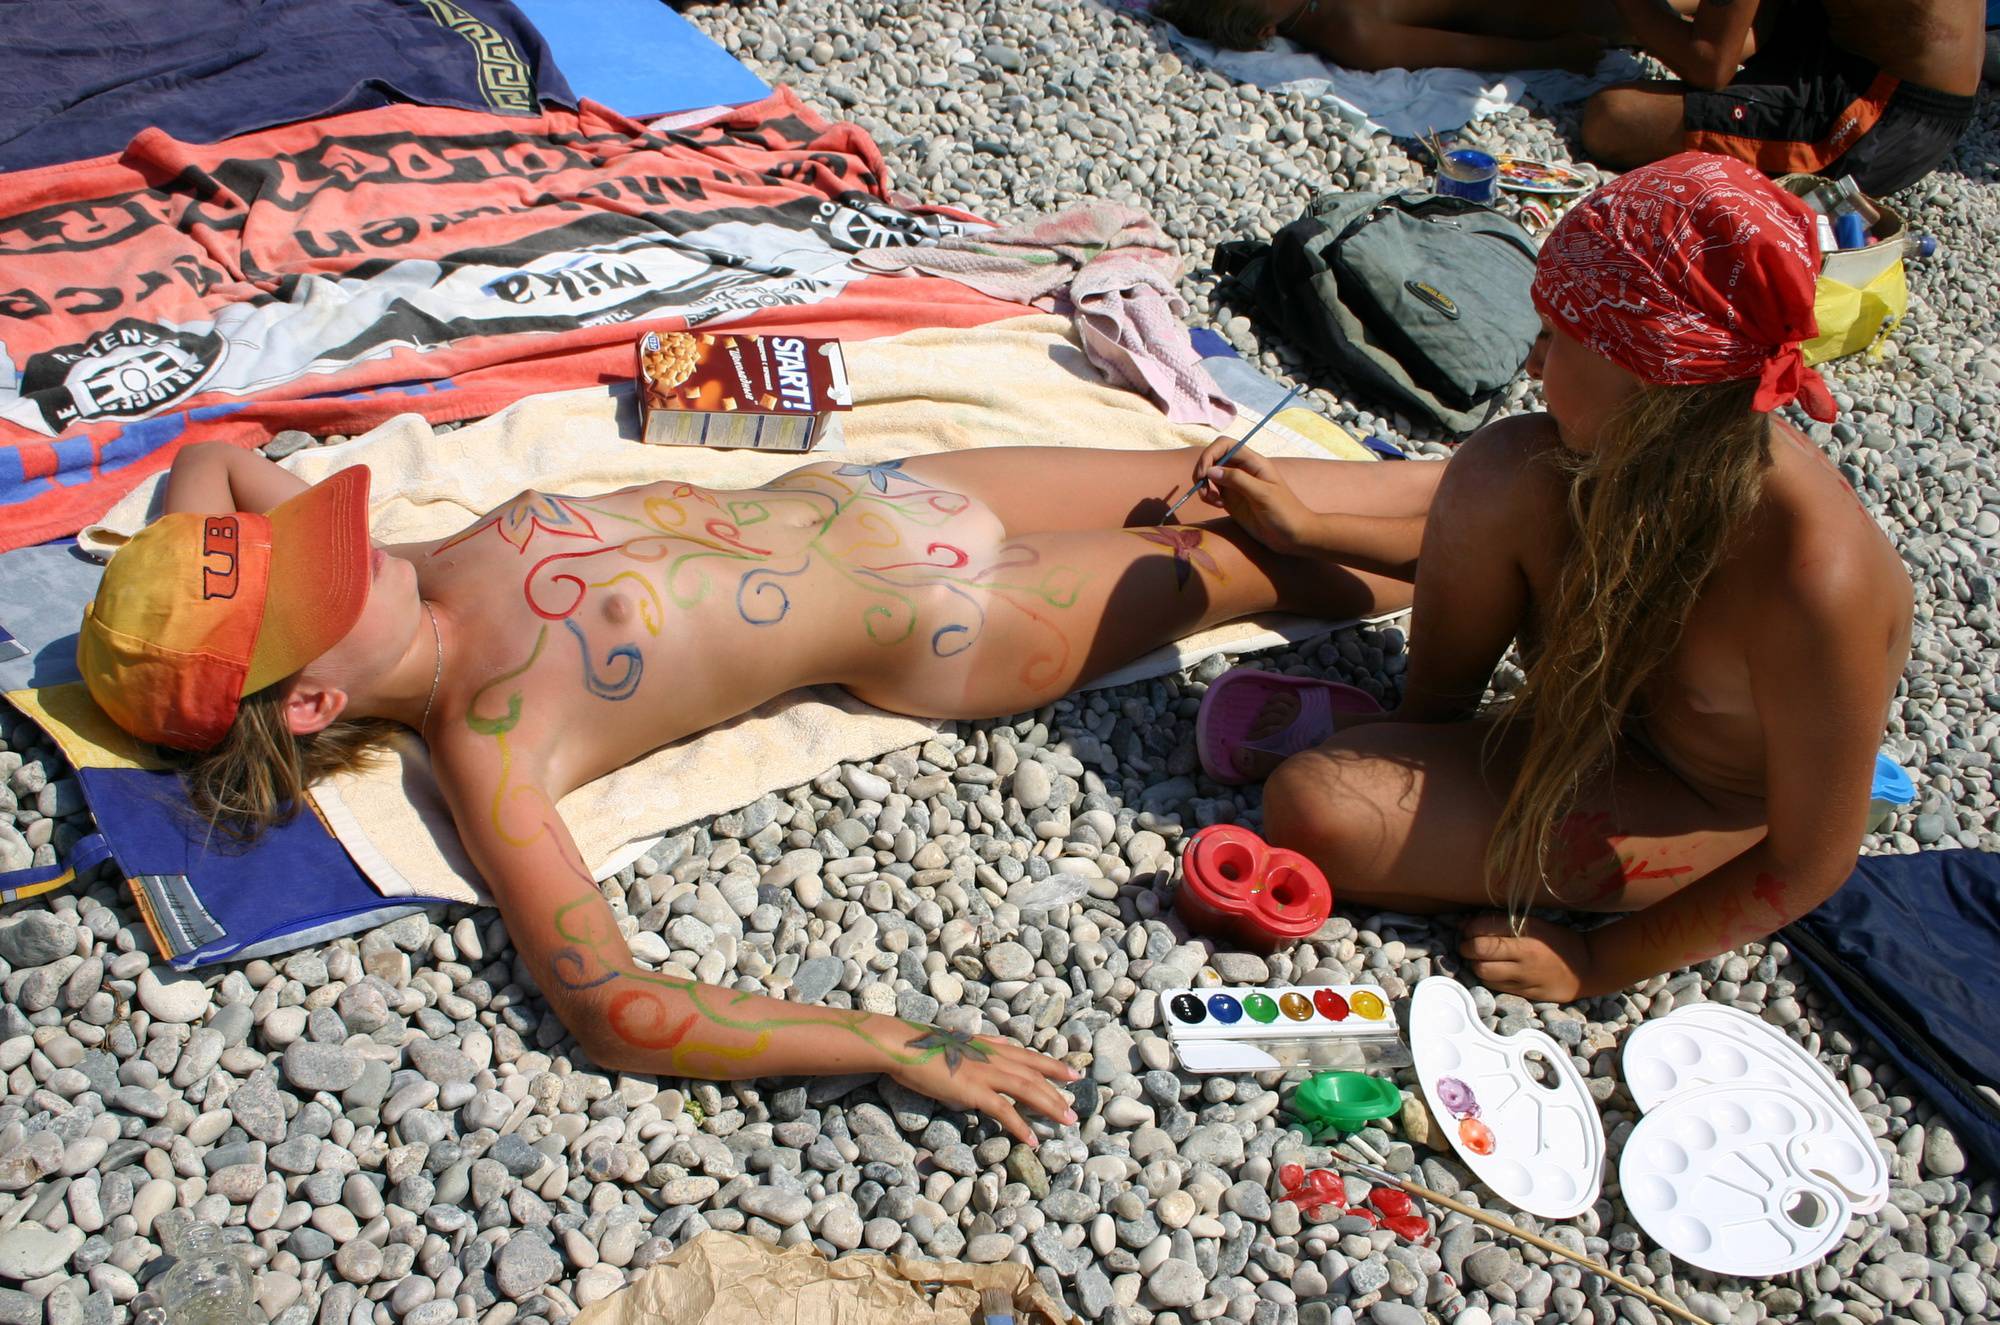 Nude Body Painting Prep - 1